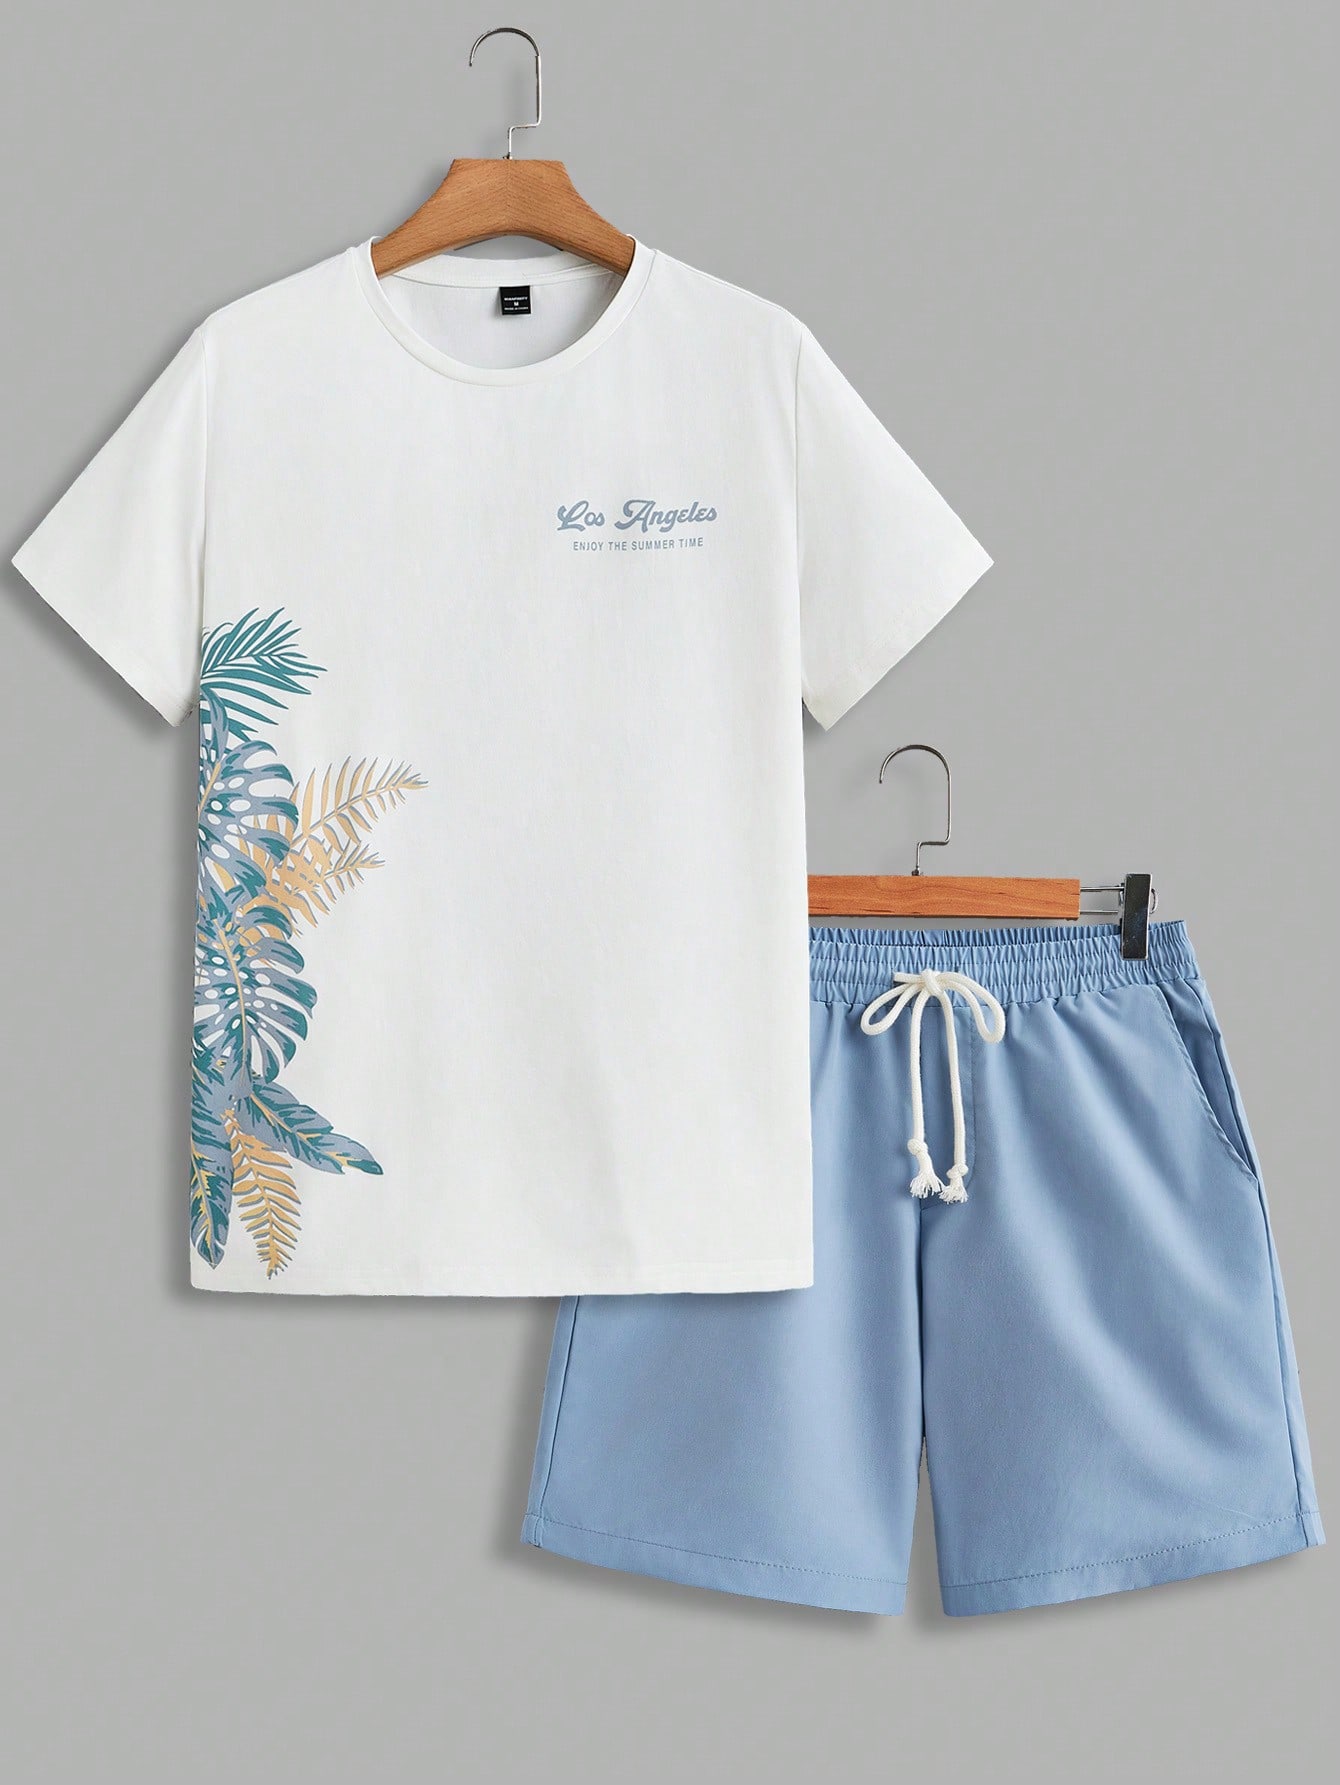 Мужская рубашка с короткими рукавами и шортами на шнурке Manfinity RSRT с тропическим принтом, голубые повседневная мужская пляжная гавайская рубашка с коротким рукавом летняя рубашка с тропическим принтом и пуговицами мужская азиатская мо